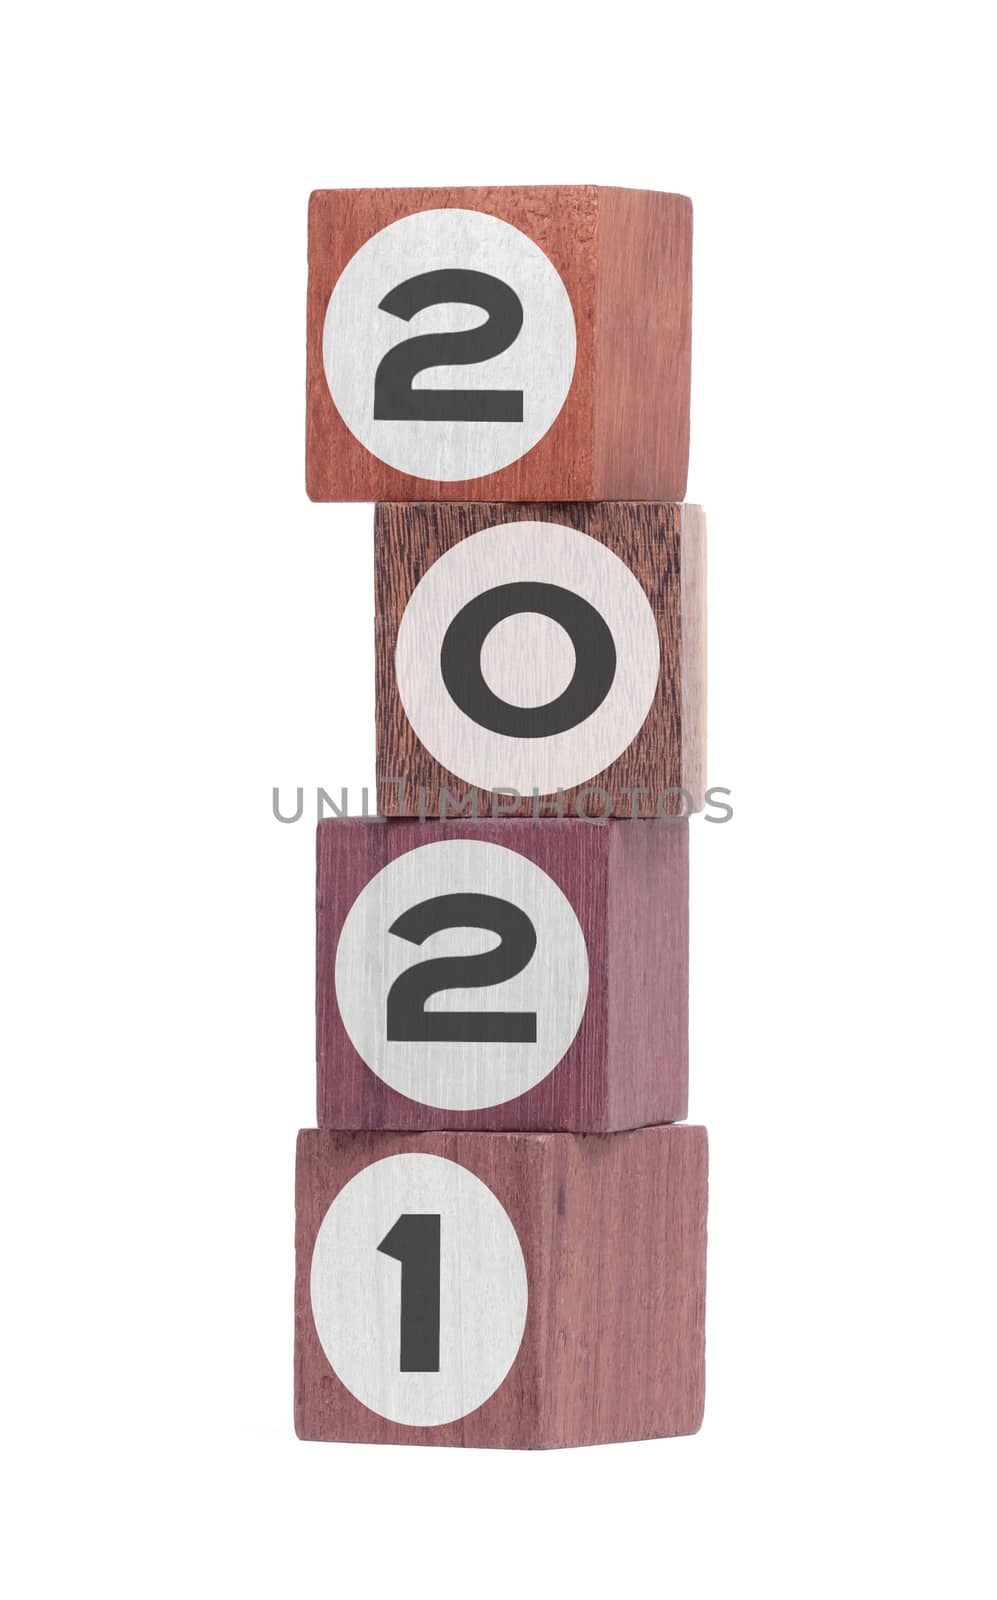 Four isolated hardwood toy blocks on white, saying 2021